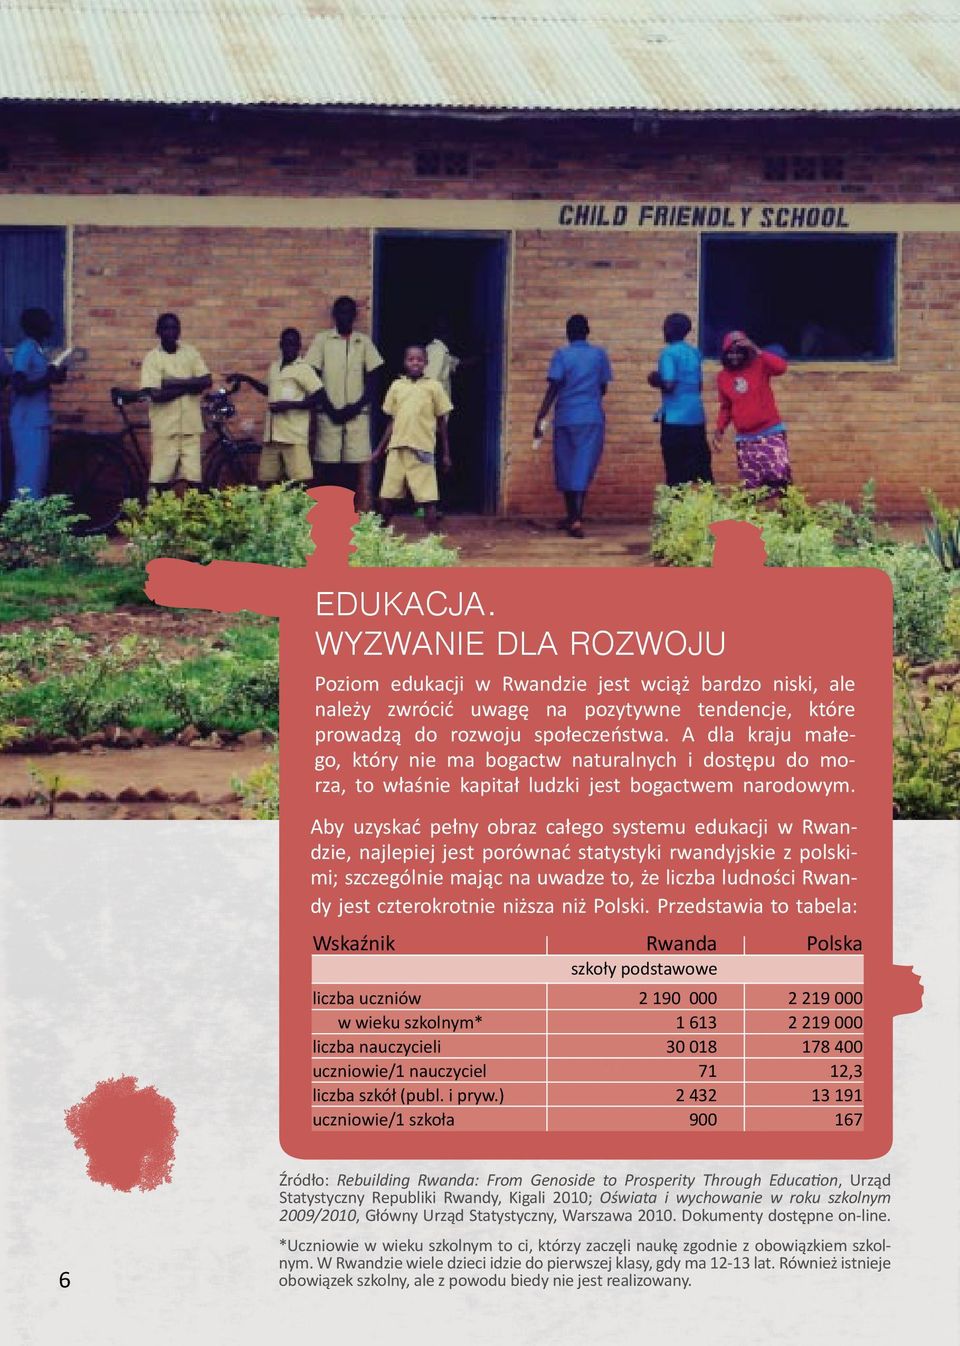 Aby uzyskać pełny obraz całego systemu edukacji w Rwandzie, najlepiej jest porównać statystyki rwandyjskie z polskimi; szczególnie mając na uwadze to, że liczba ludności Rwandy jest czterokrotnie